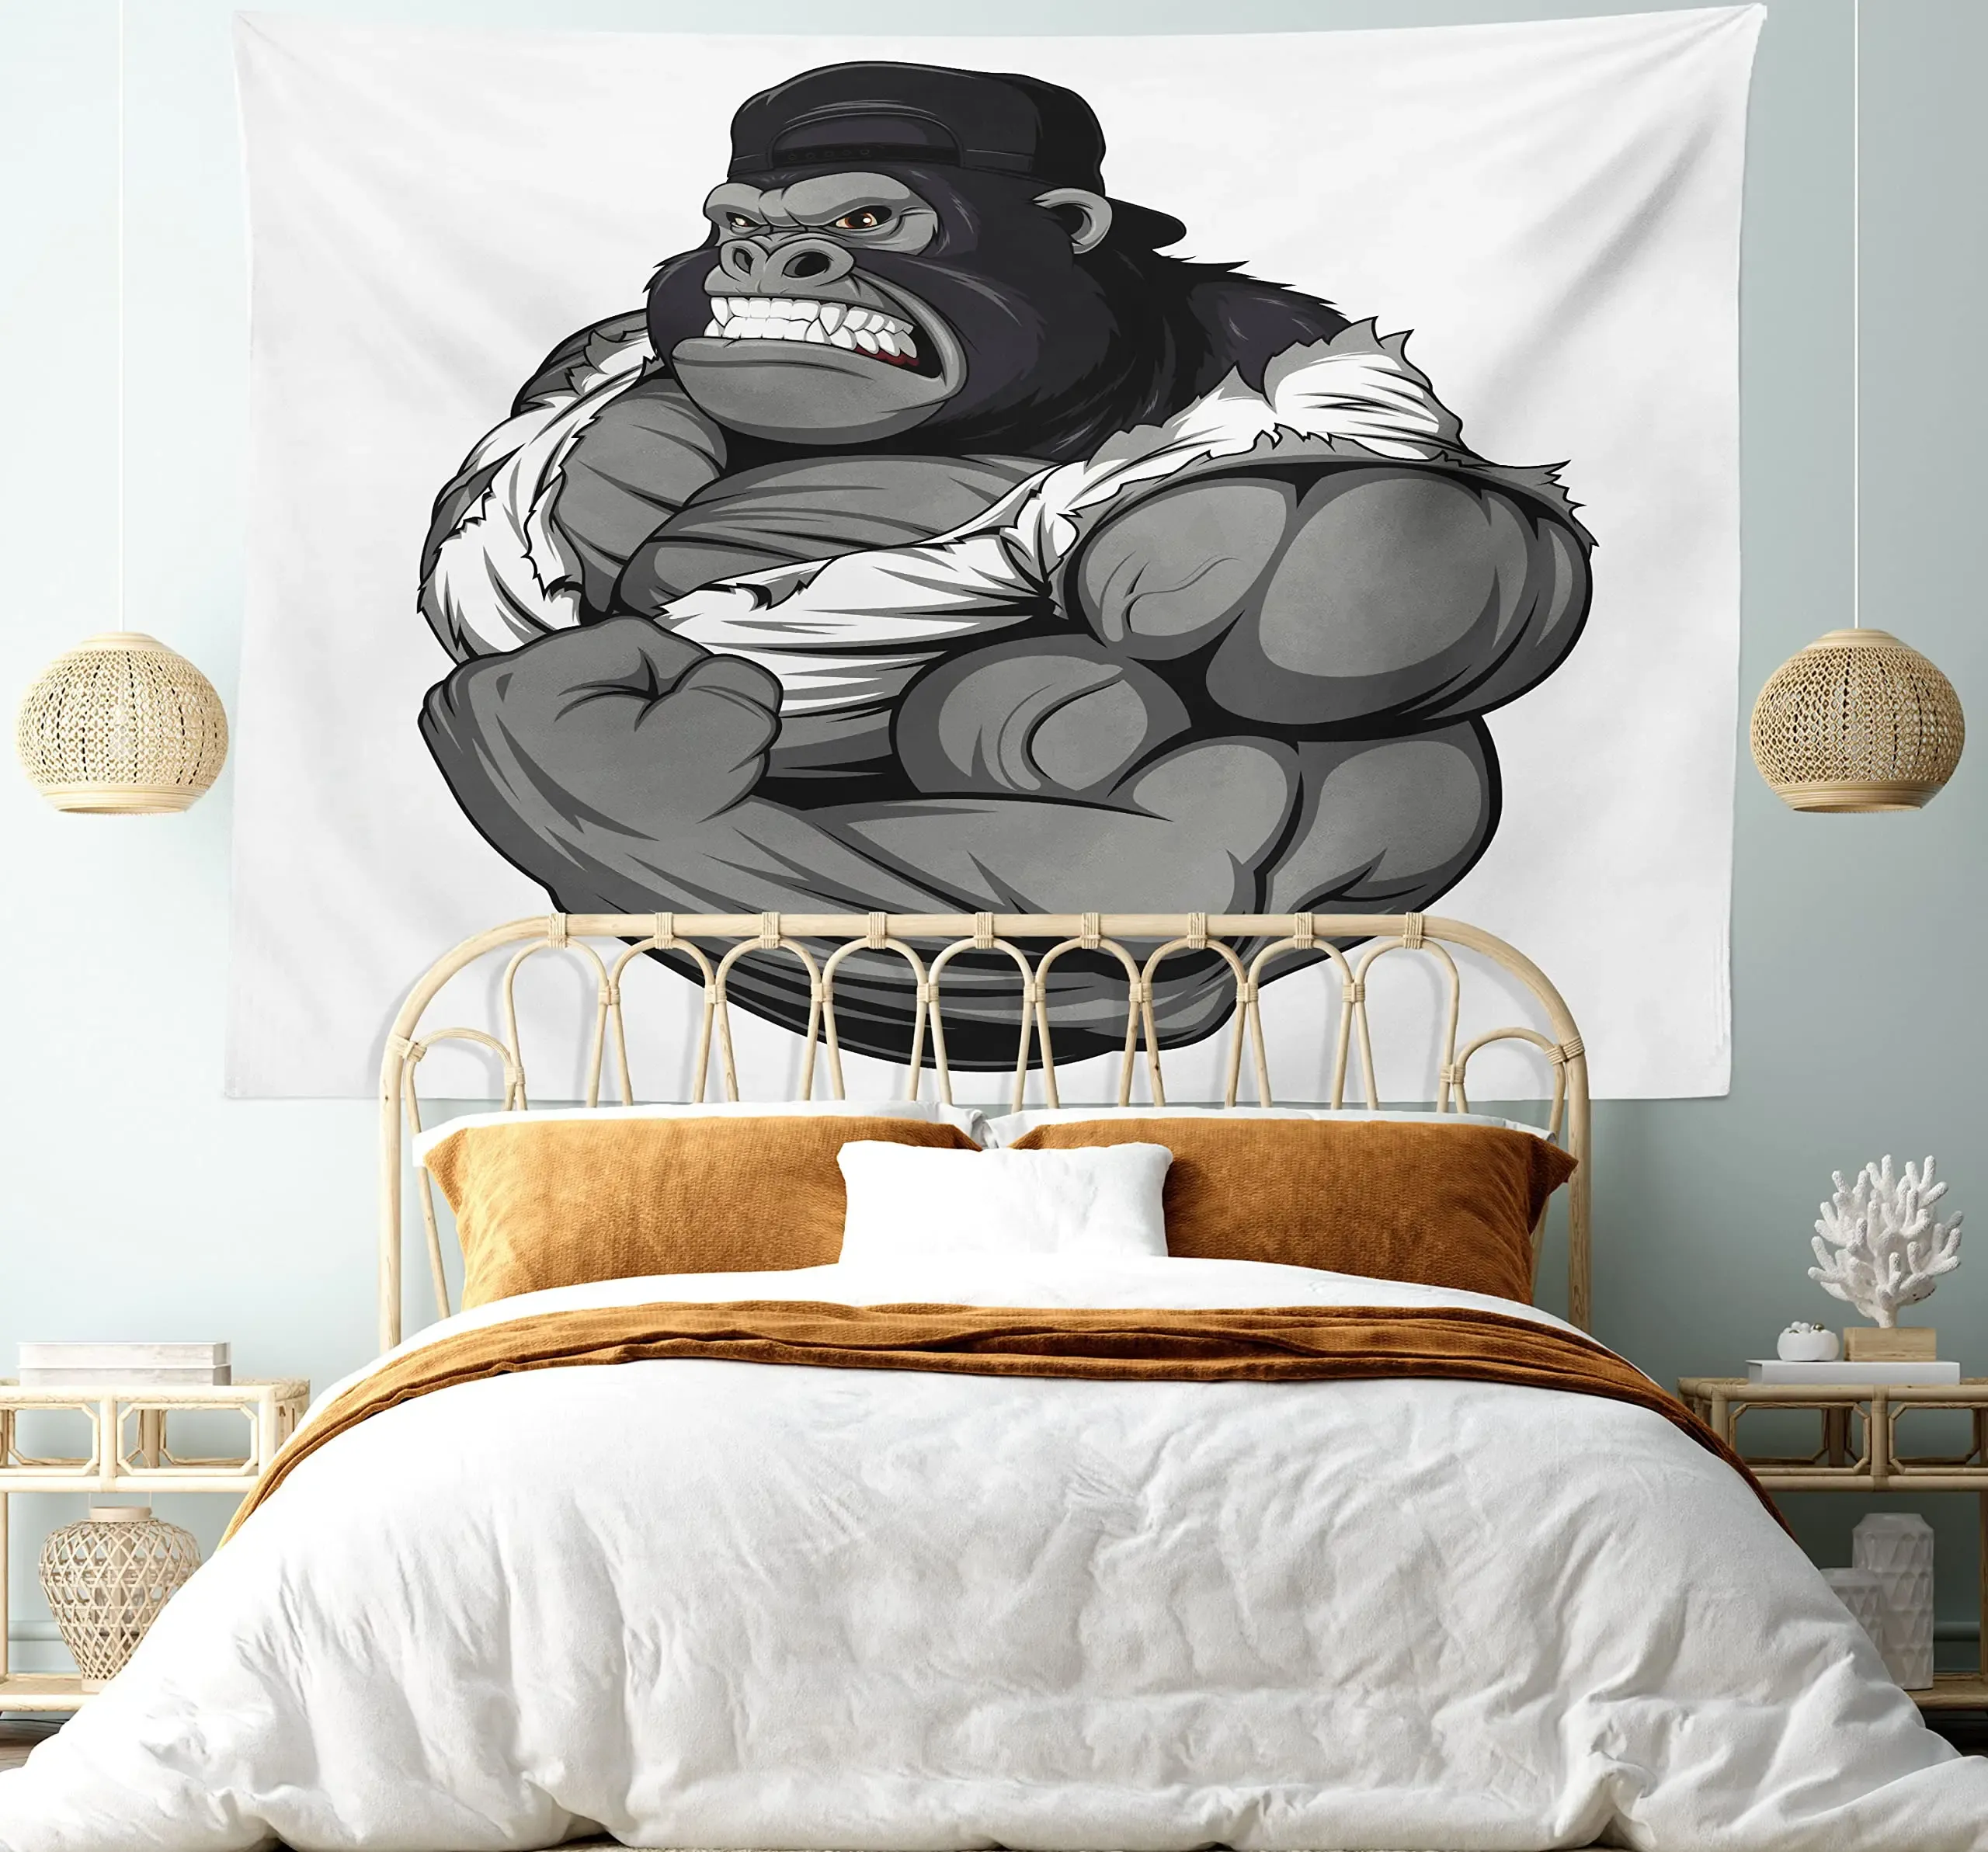 Animaux drôles tapisserie hippie gorille cool fumant cigare tapisserie mur suspendu chambre animal sauvage orang-outan à la maison décor